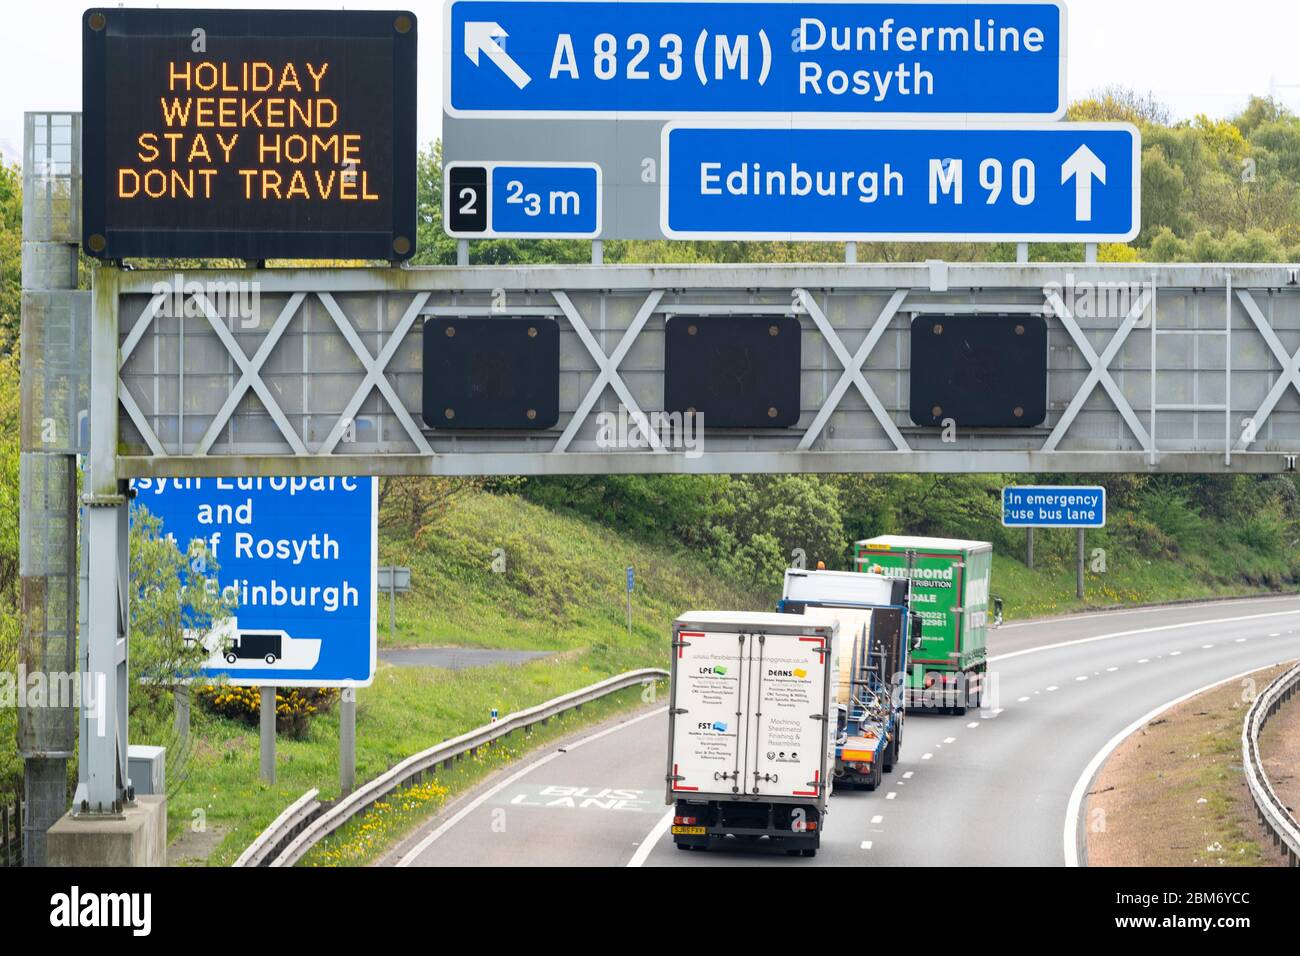 Dunfermline, Scozia, Regno Unito. 7 maggio 2020. Il traffico pomeridiano sulla M90 a Fife è notevolmente più pesante del normale durante il blocco del coronavirus. Segnale di avvertimento che dice agli automobilisti di rimanere a casa durante il fine settimana delle vacanze. Iain Masterton/Alamy Live News. Foto Stock